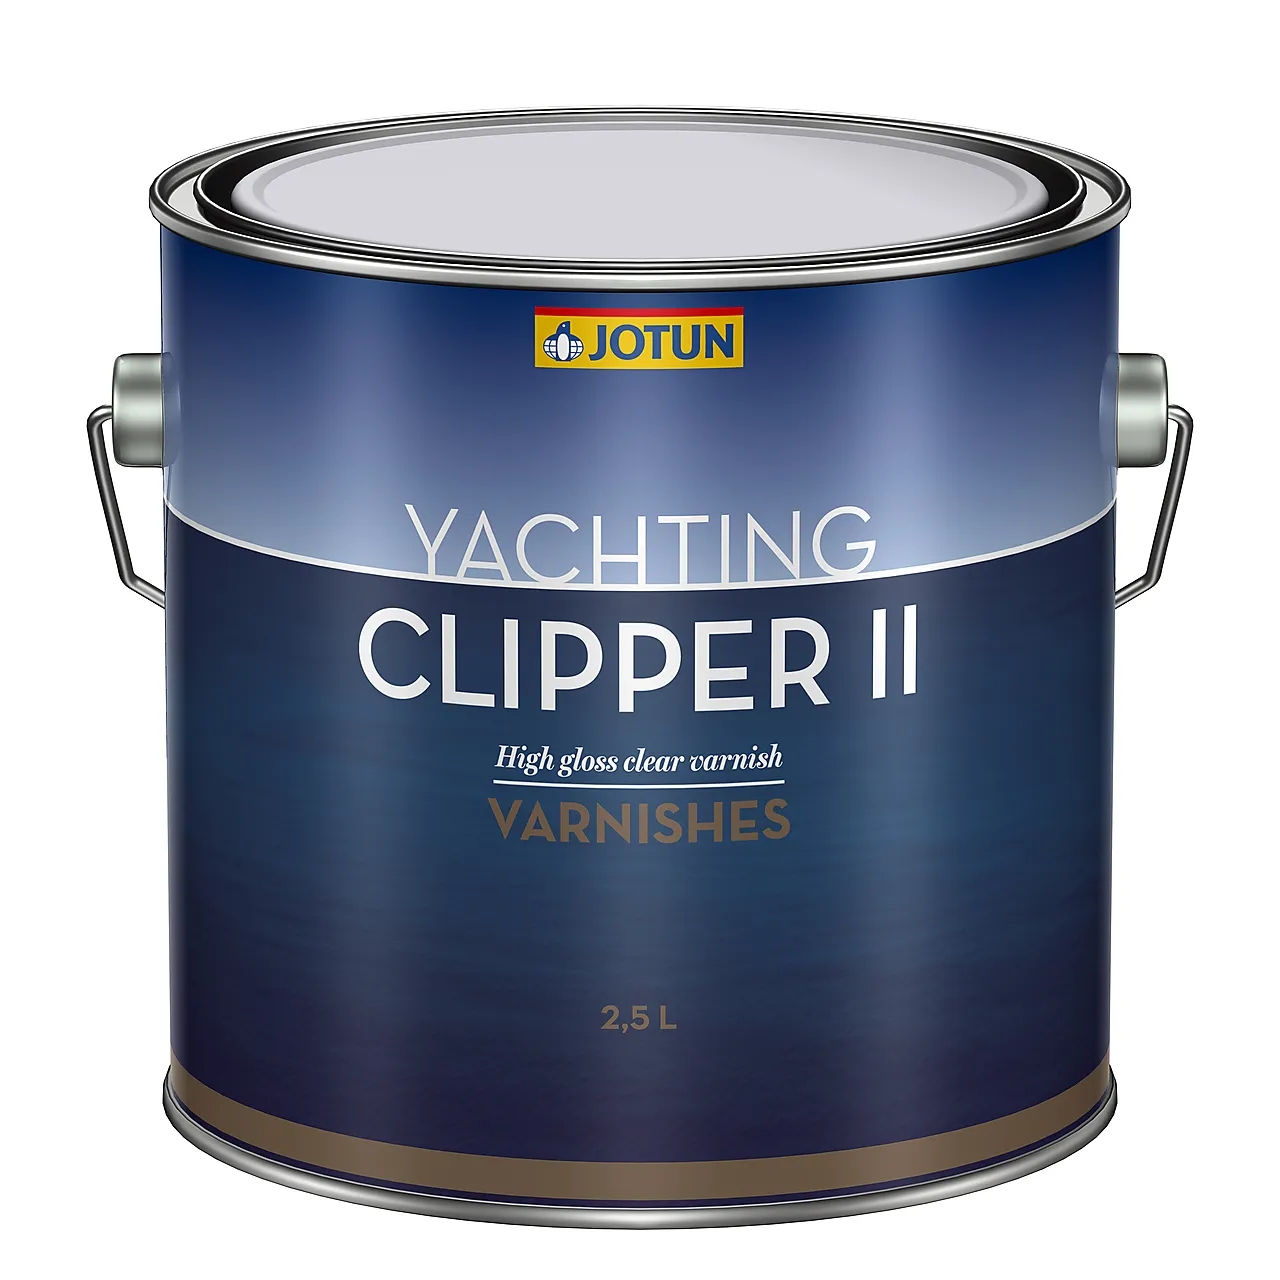 Clipper II 2,5 liter